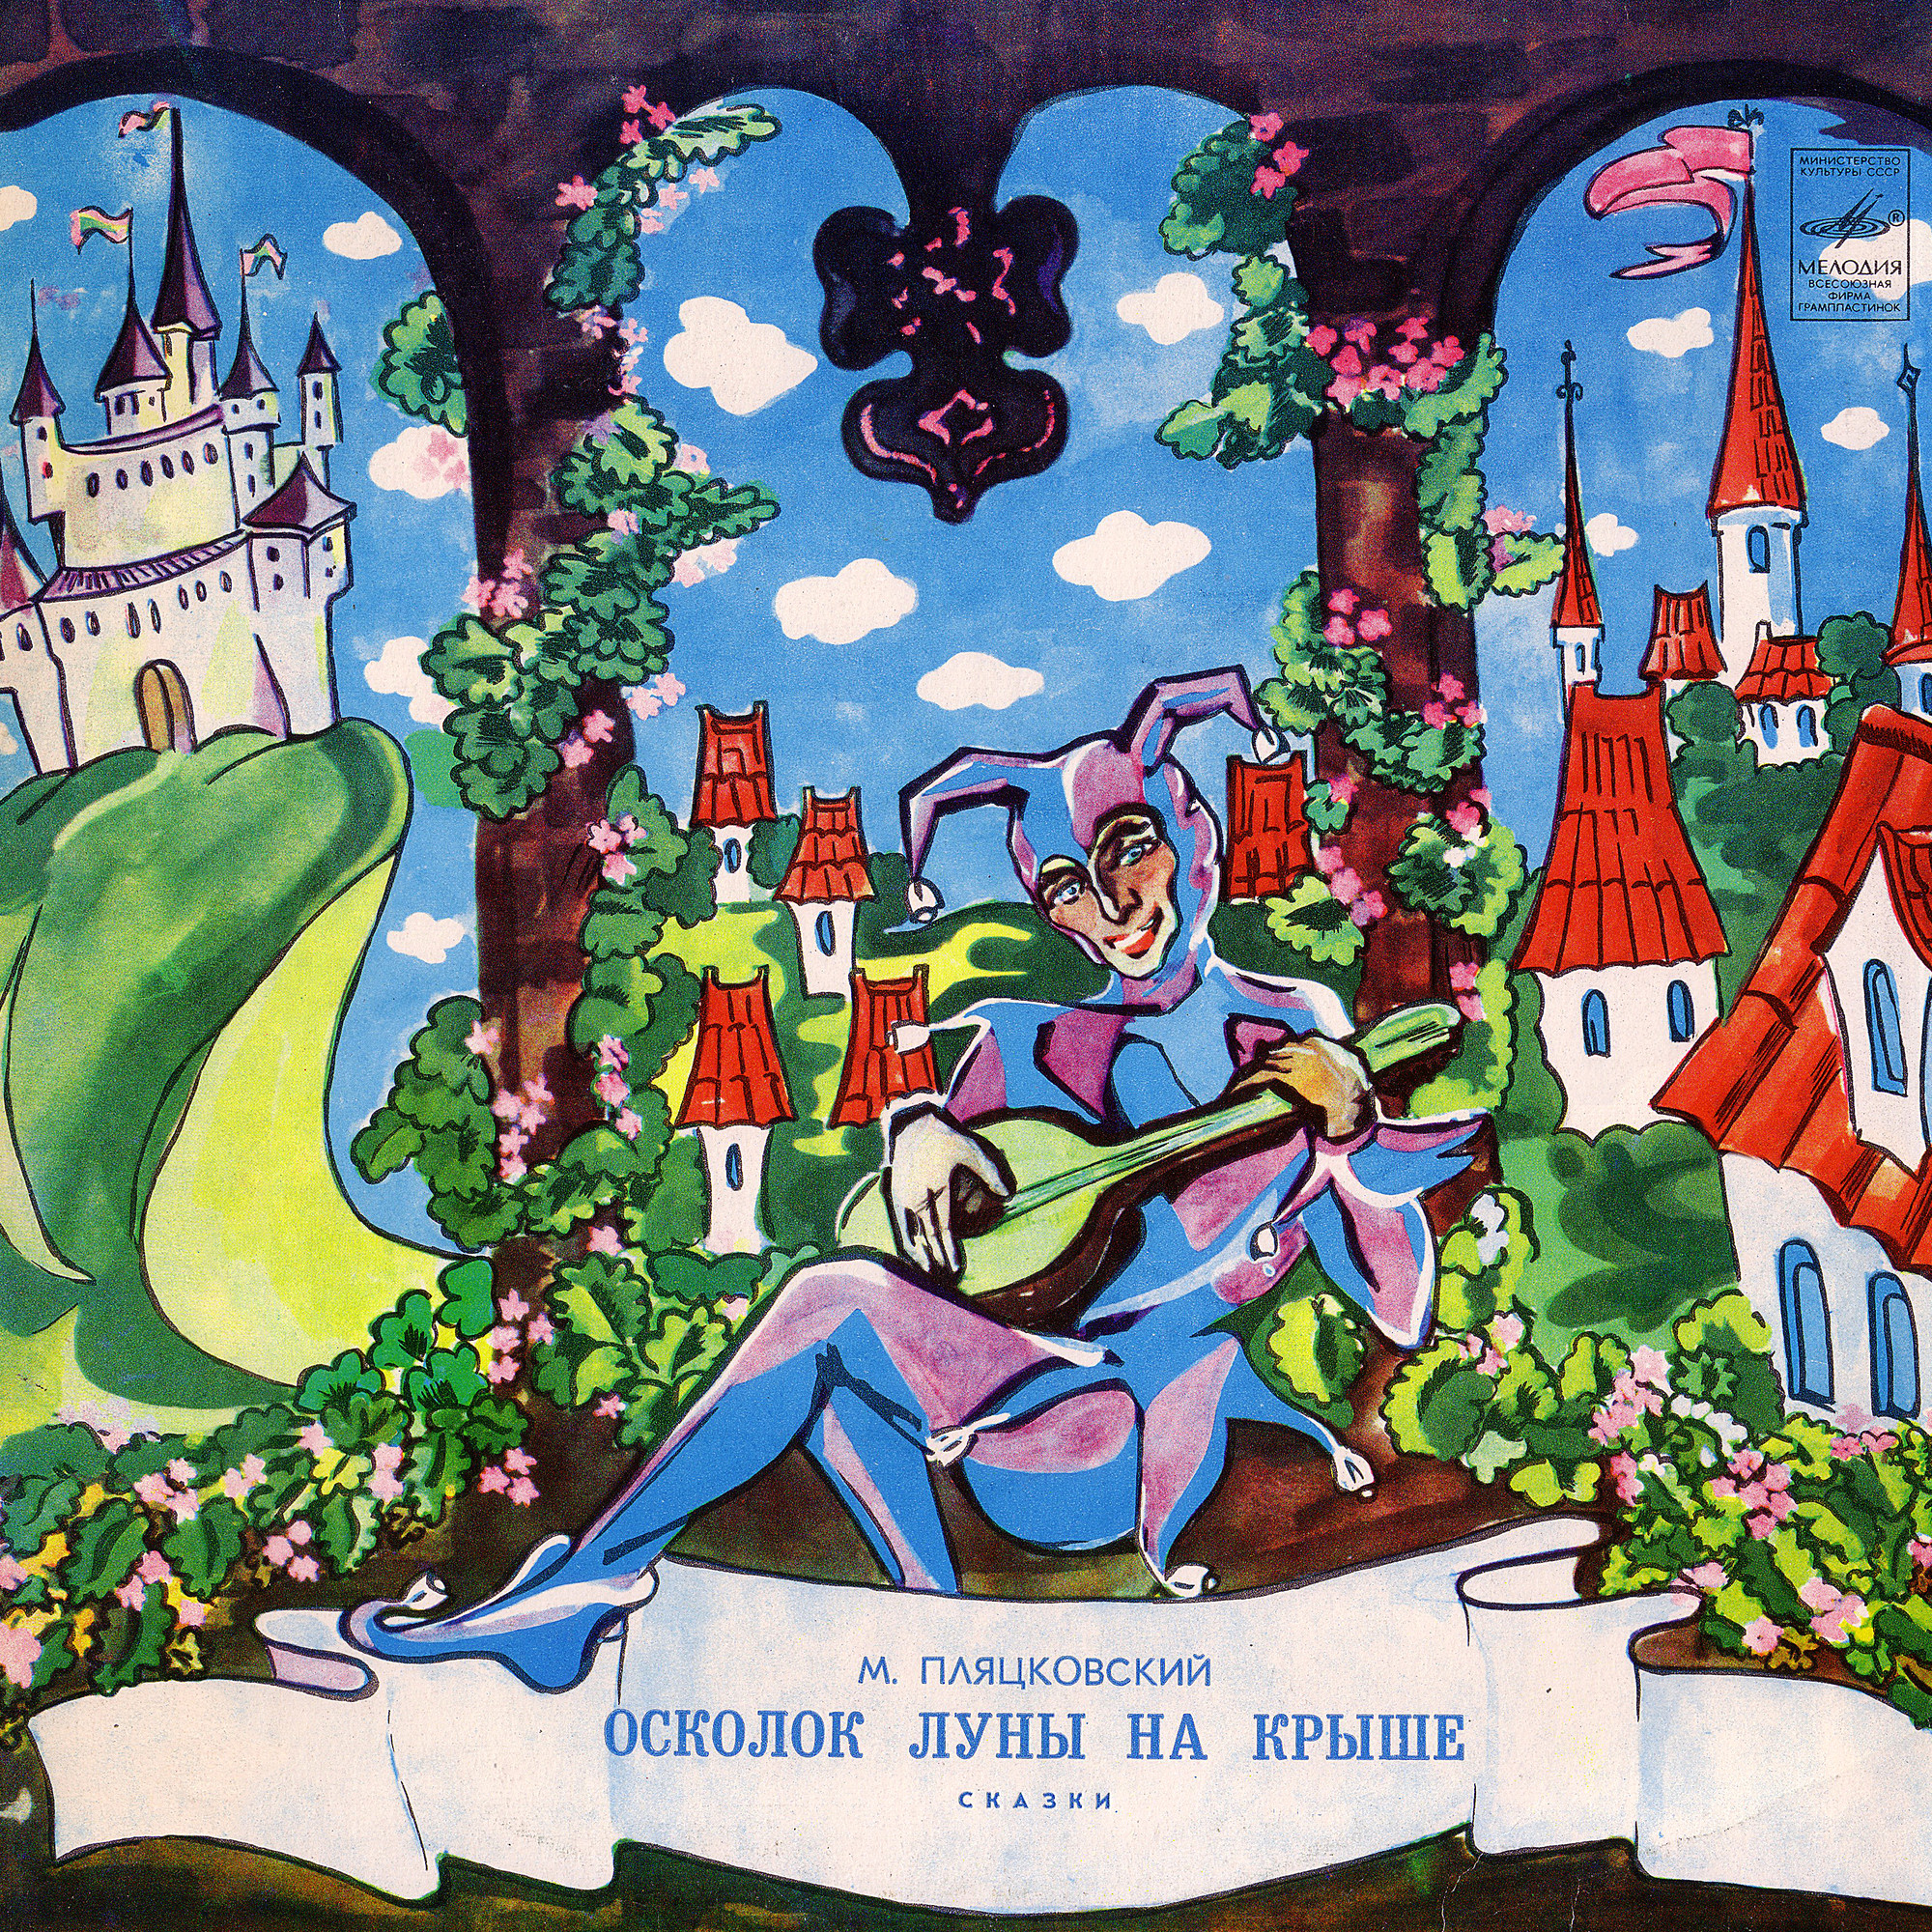 М. ПЛЯЦКОВСКИЙ (1935): Осколок луны на крыше, сказки.